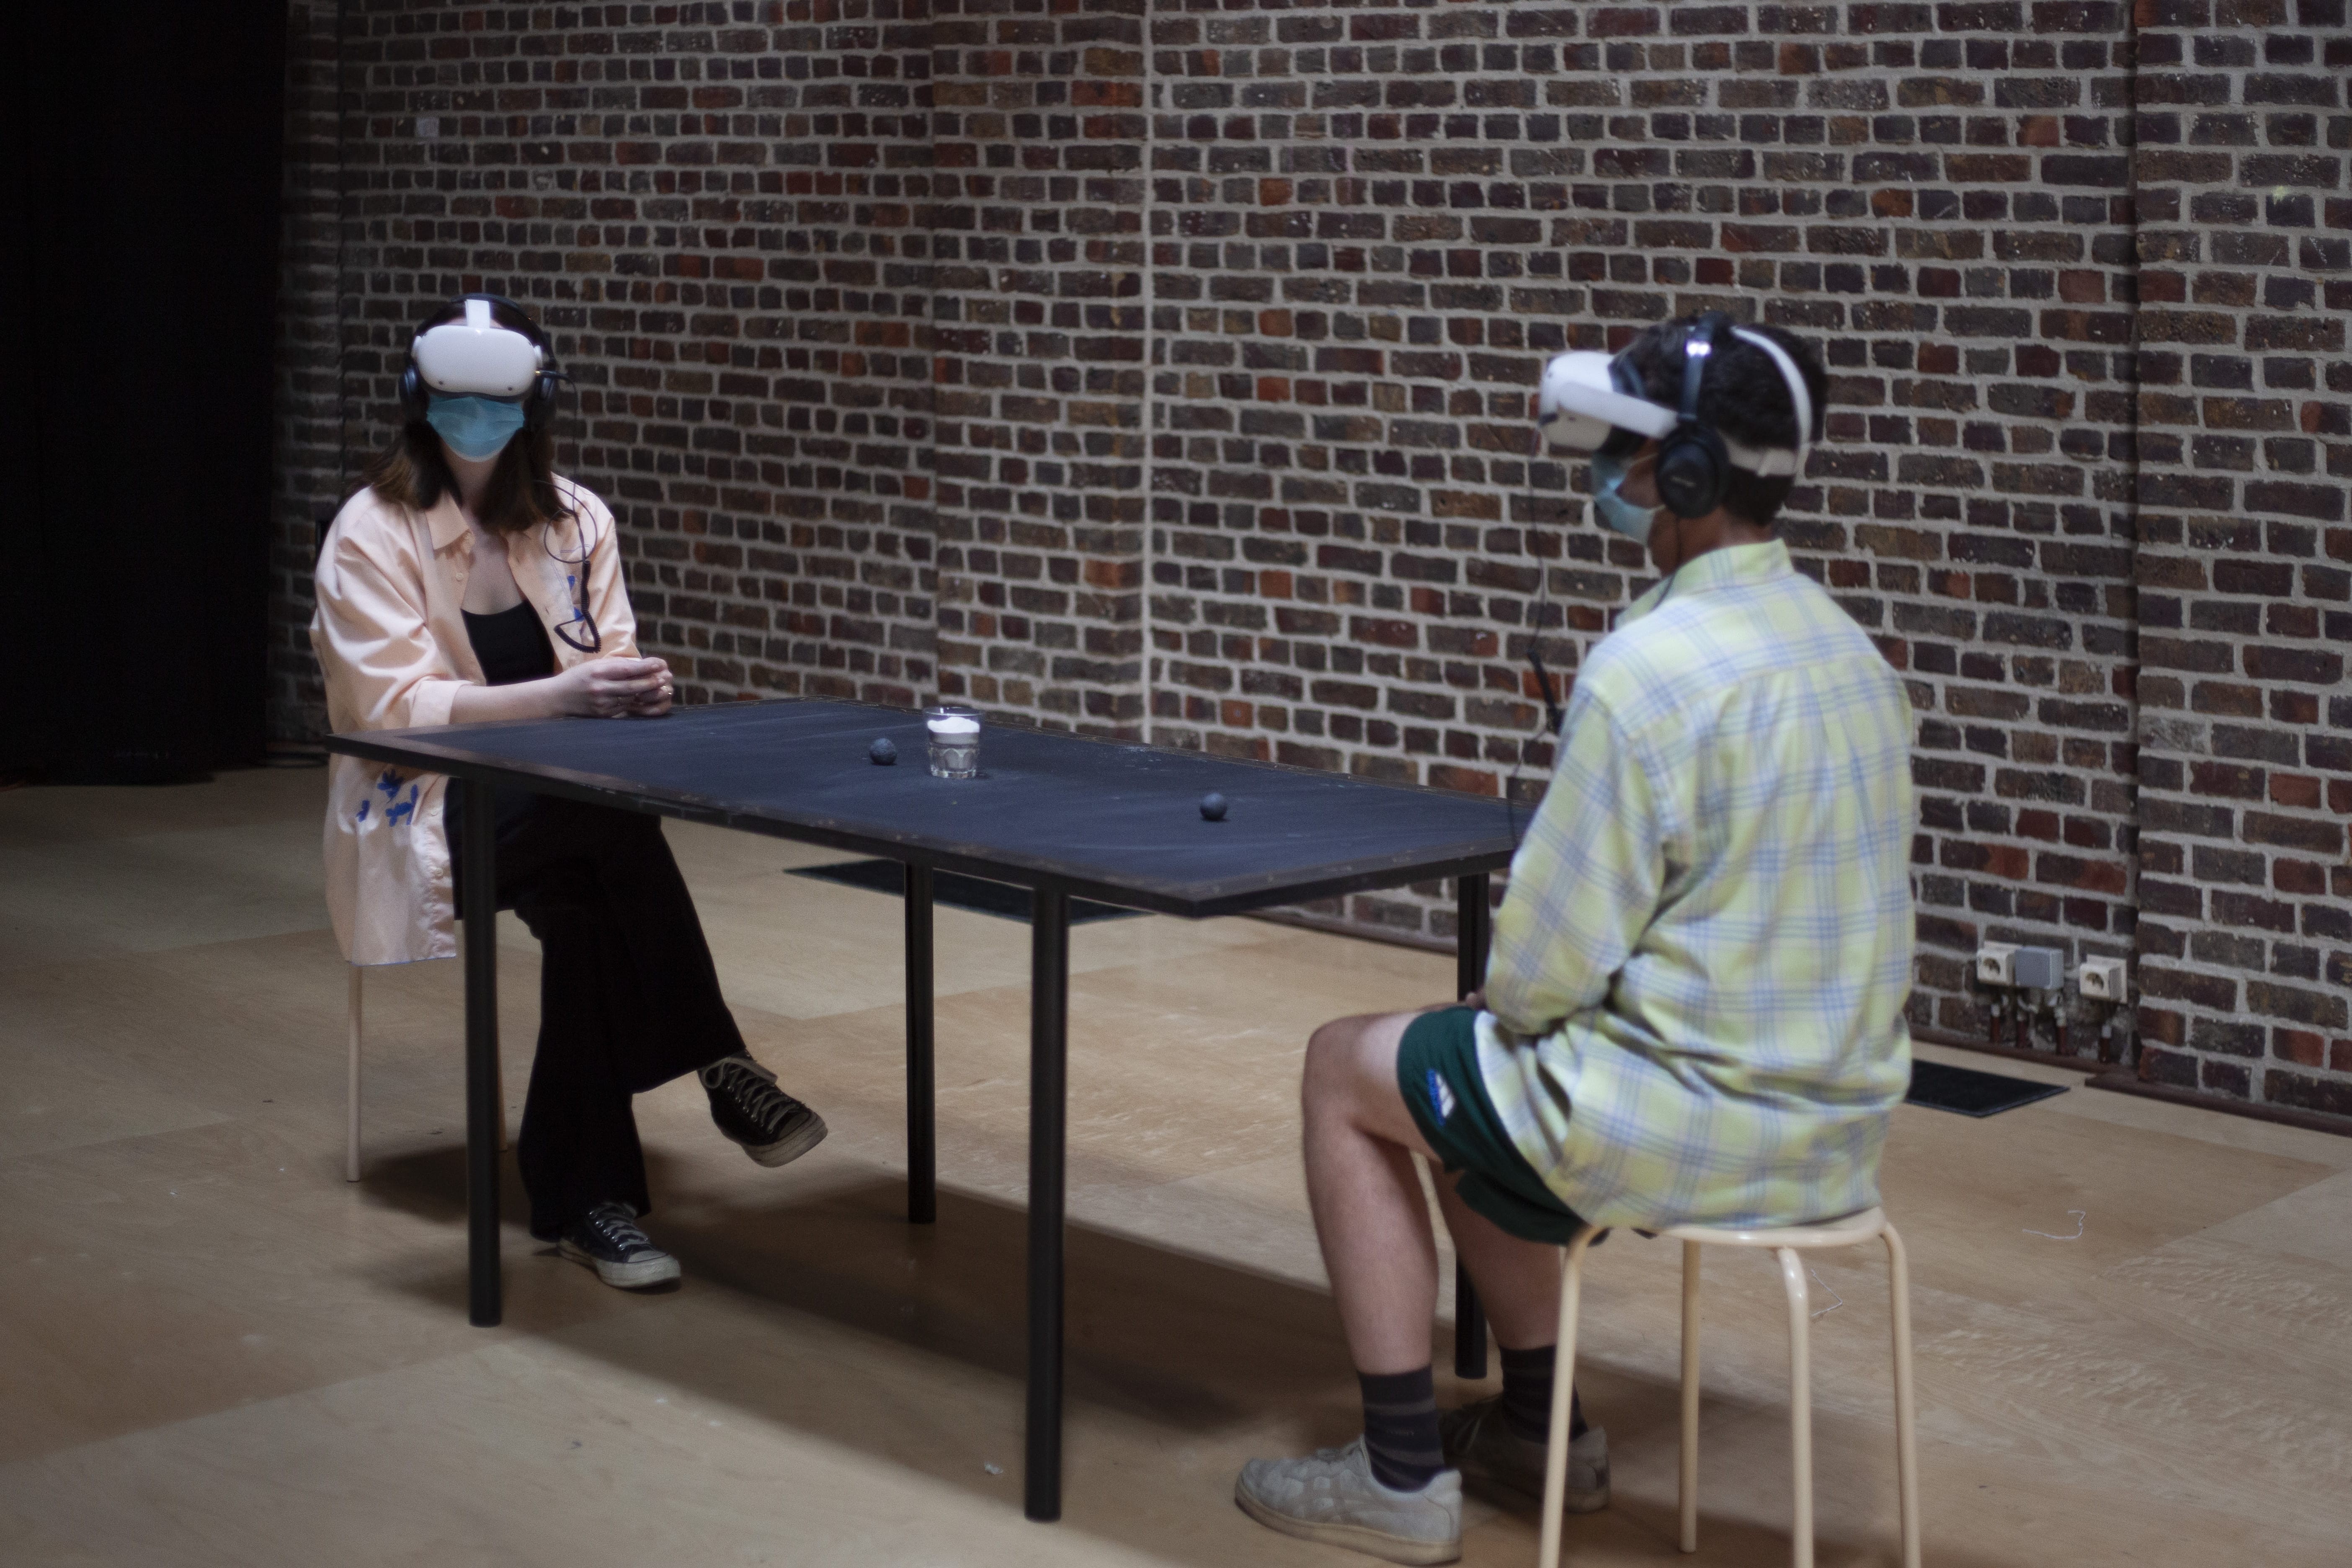 Im Hintergrund eine Backsteinwand. Im Vordergrund sitzen sich zwei Personen an einem schwarzen Tisch gegenüber. Sie haben beide eine VR-Brille auf.